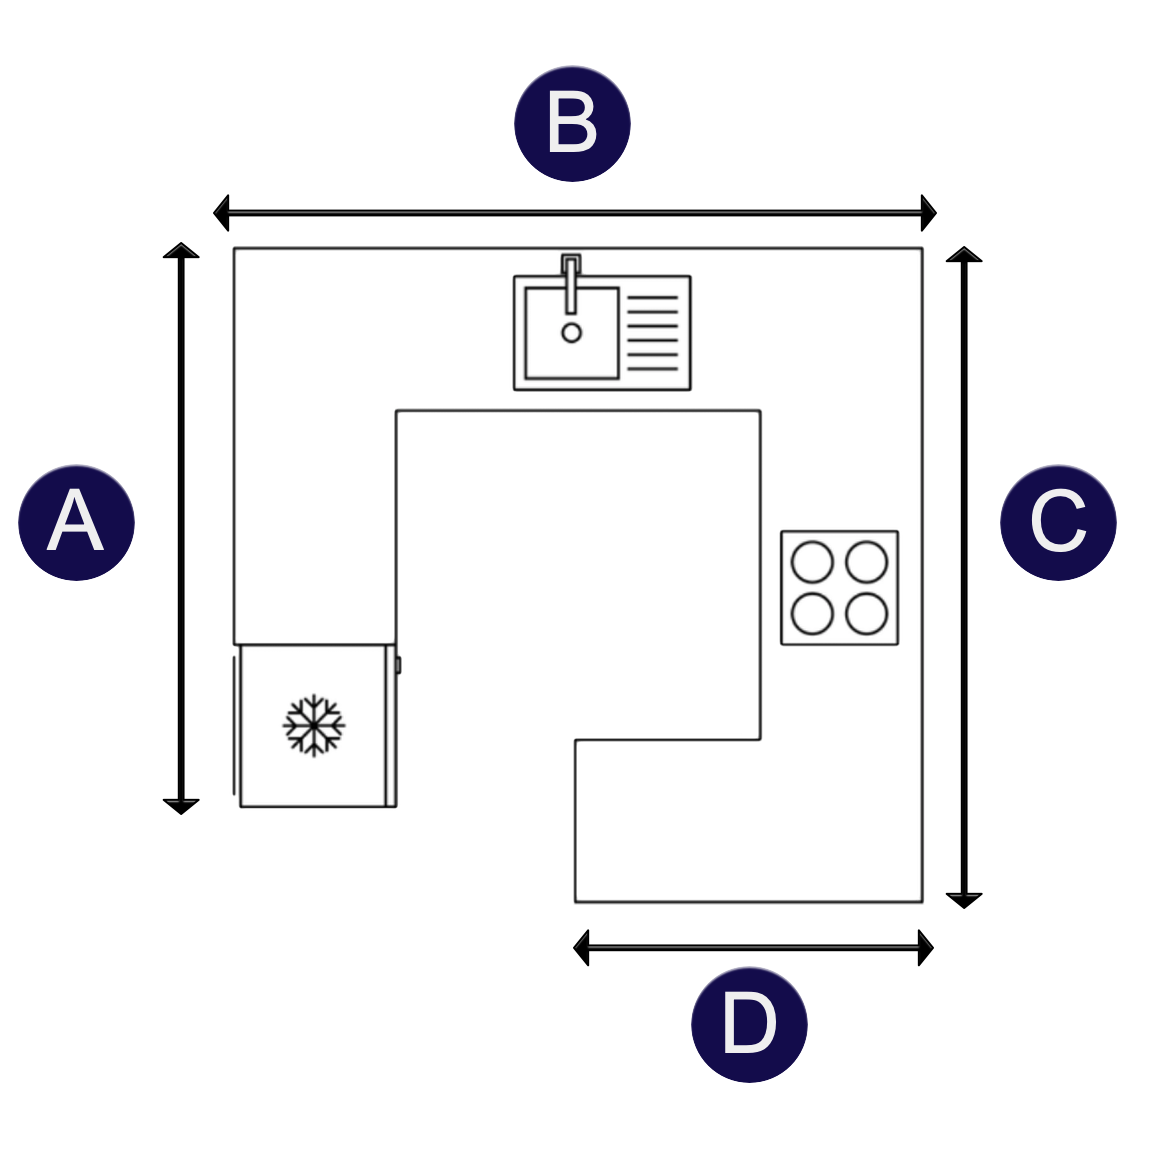 G-shape kitchen layout